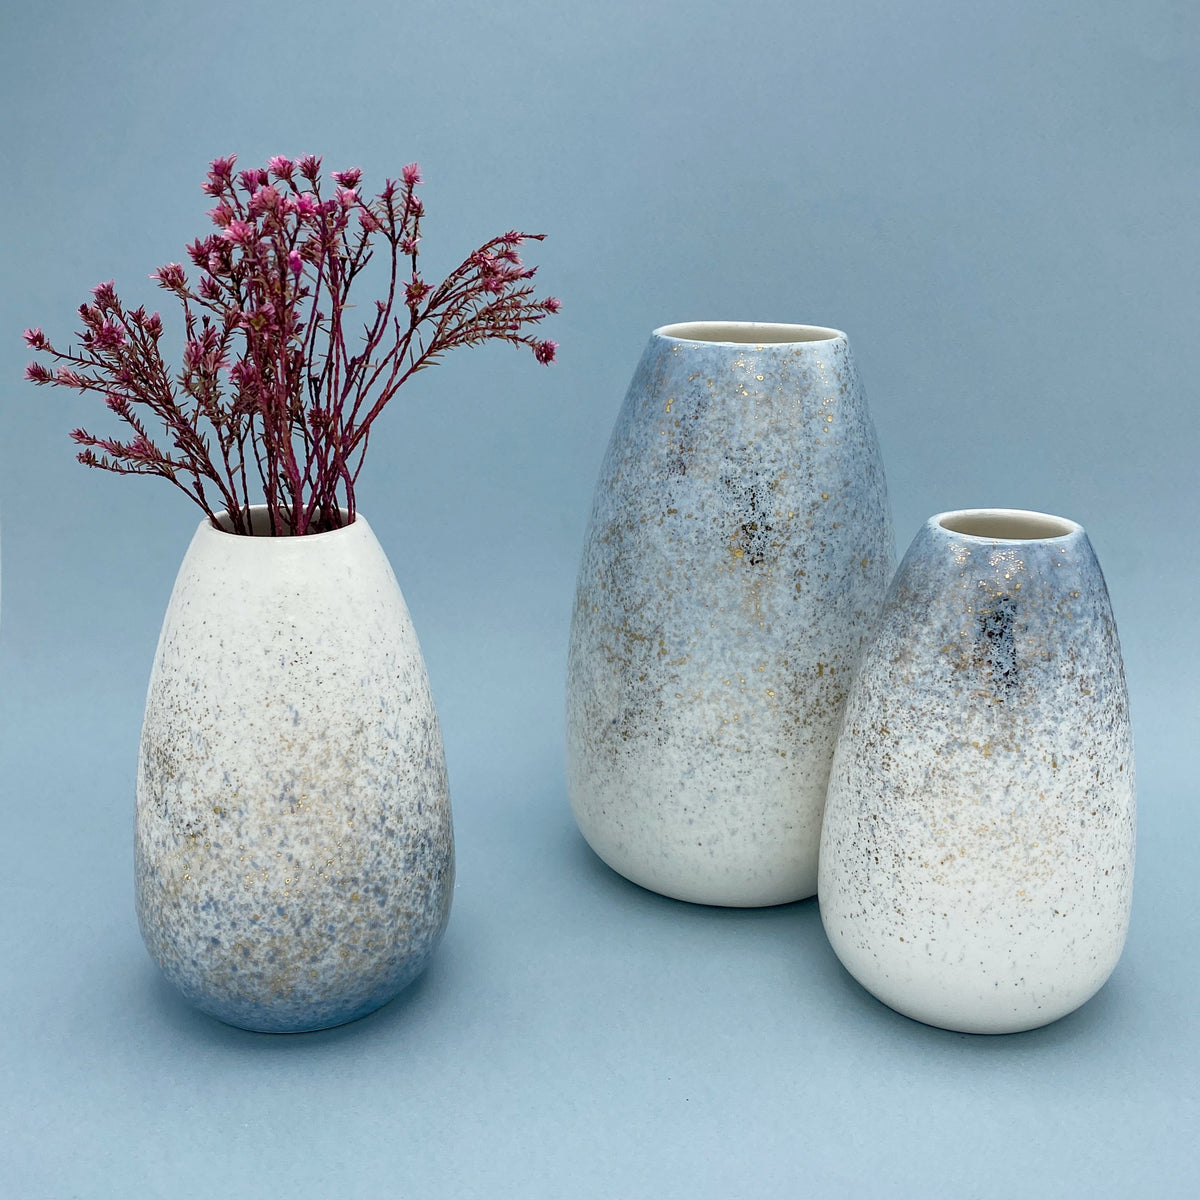 Golden vase, Light Blue - Size S / Gullvasi, Ljósblár